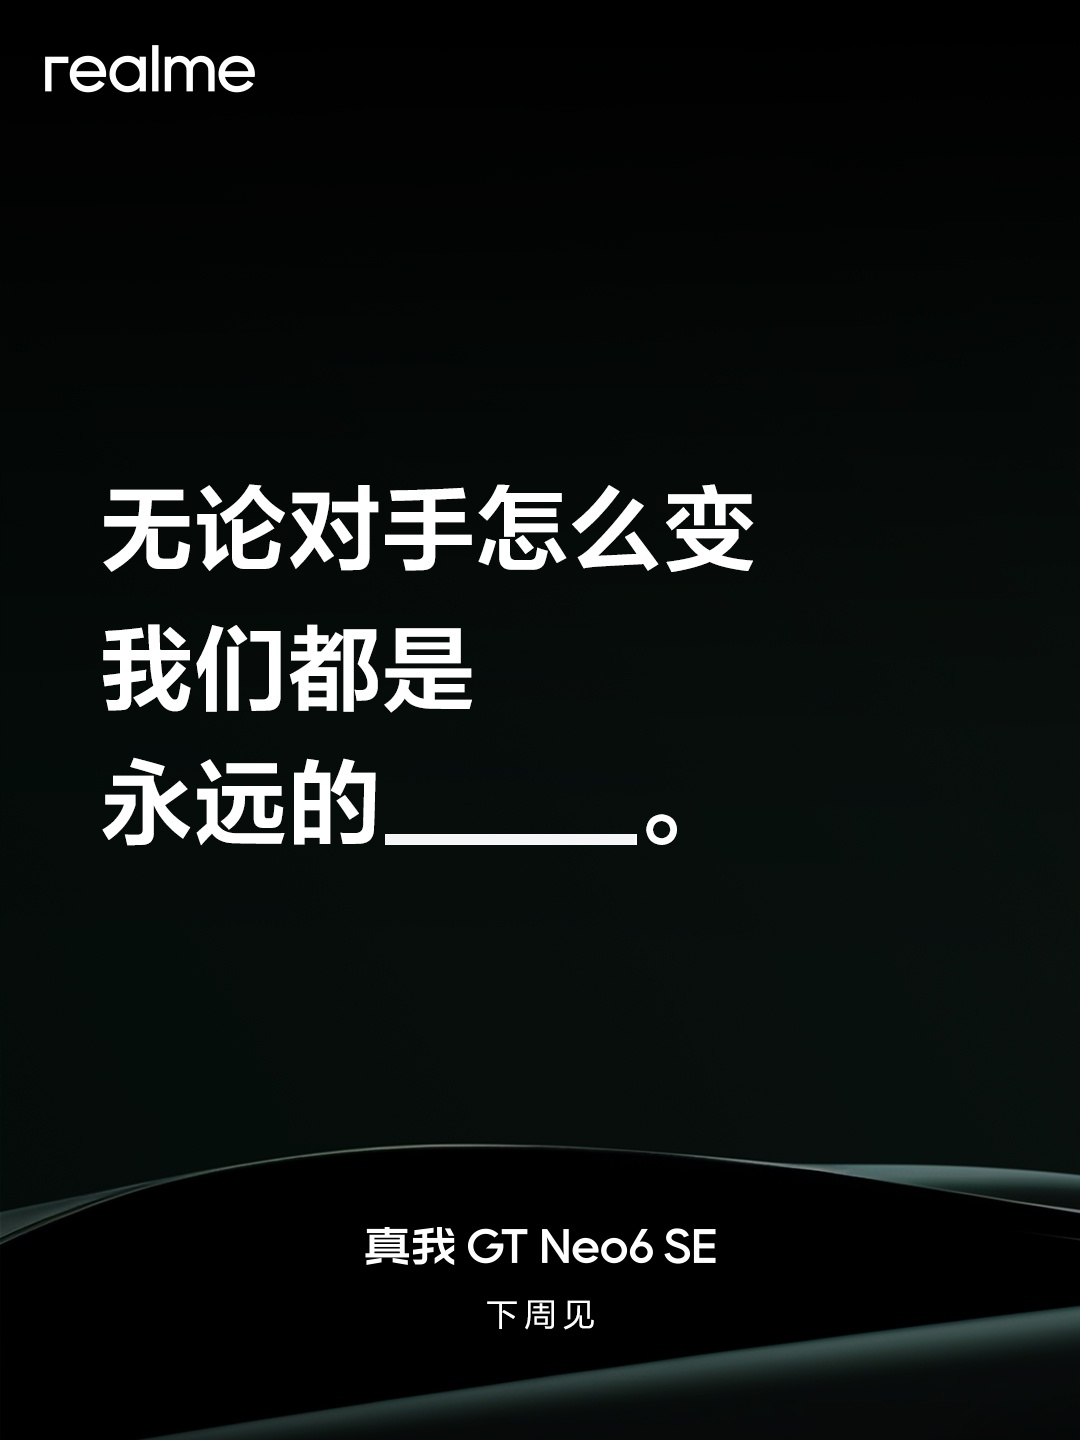 Дебют Realme GT Neo6 SE ожидается на следующей неделе